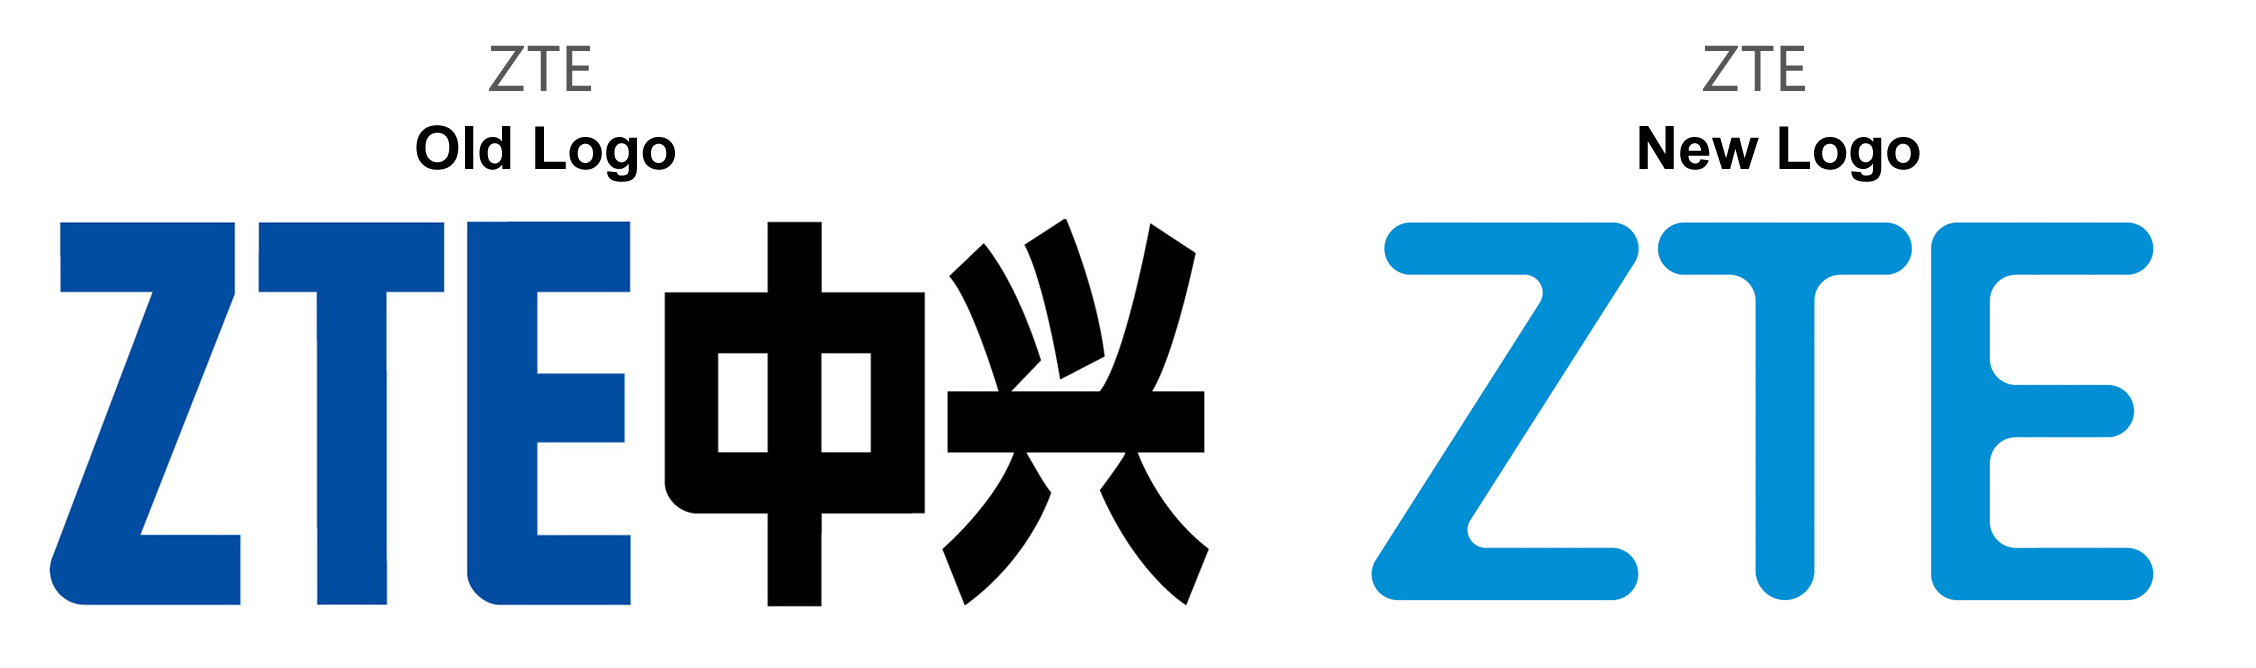 ZTE rediseña su logo para reflejar su nueva filosofía